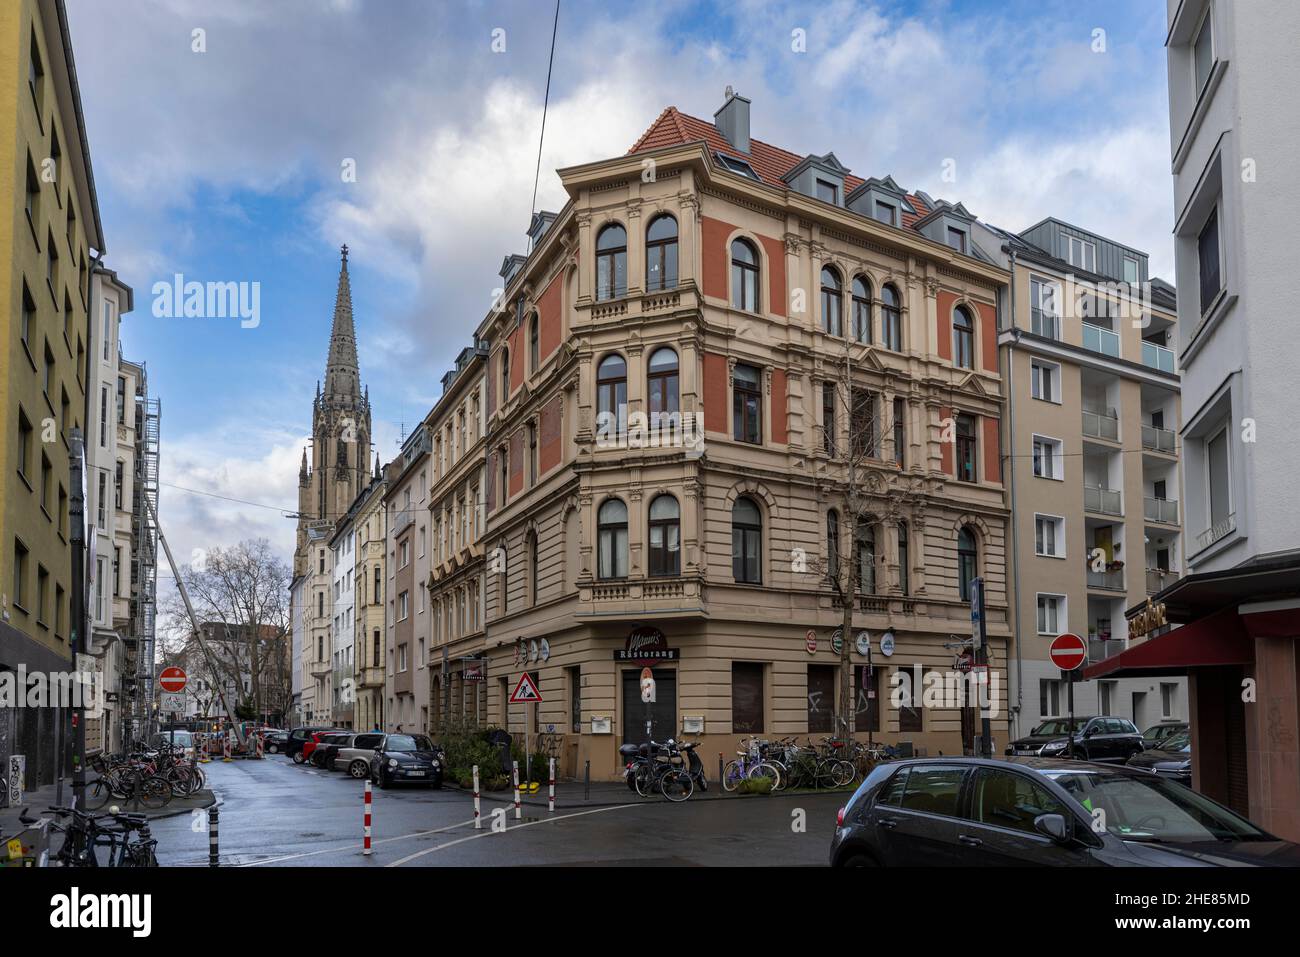 Fachadas de edificios históricos y modernos en Colonia clima de invierno Foto de stock